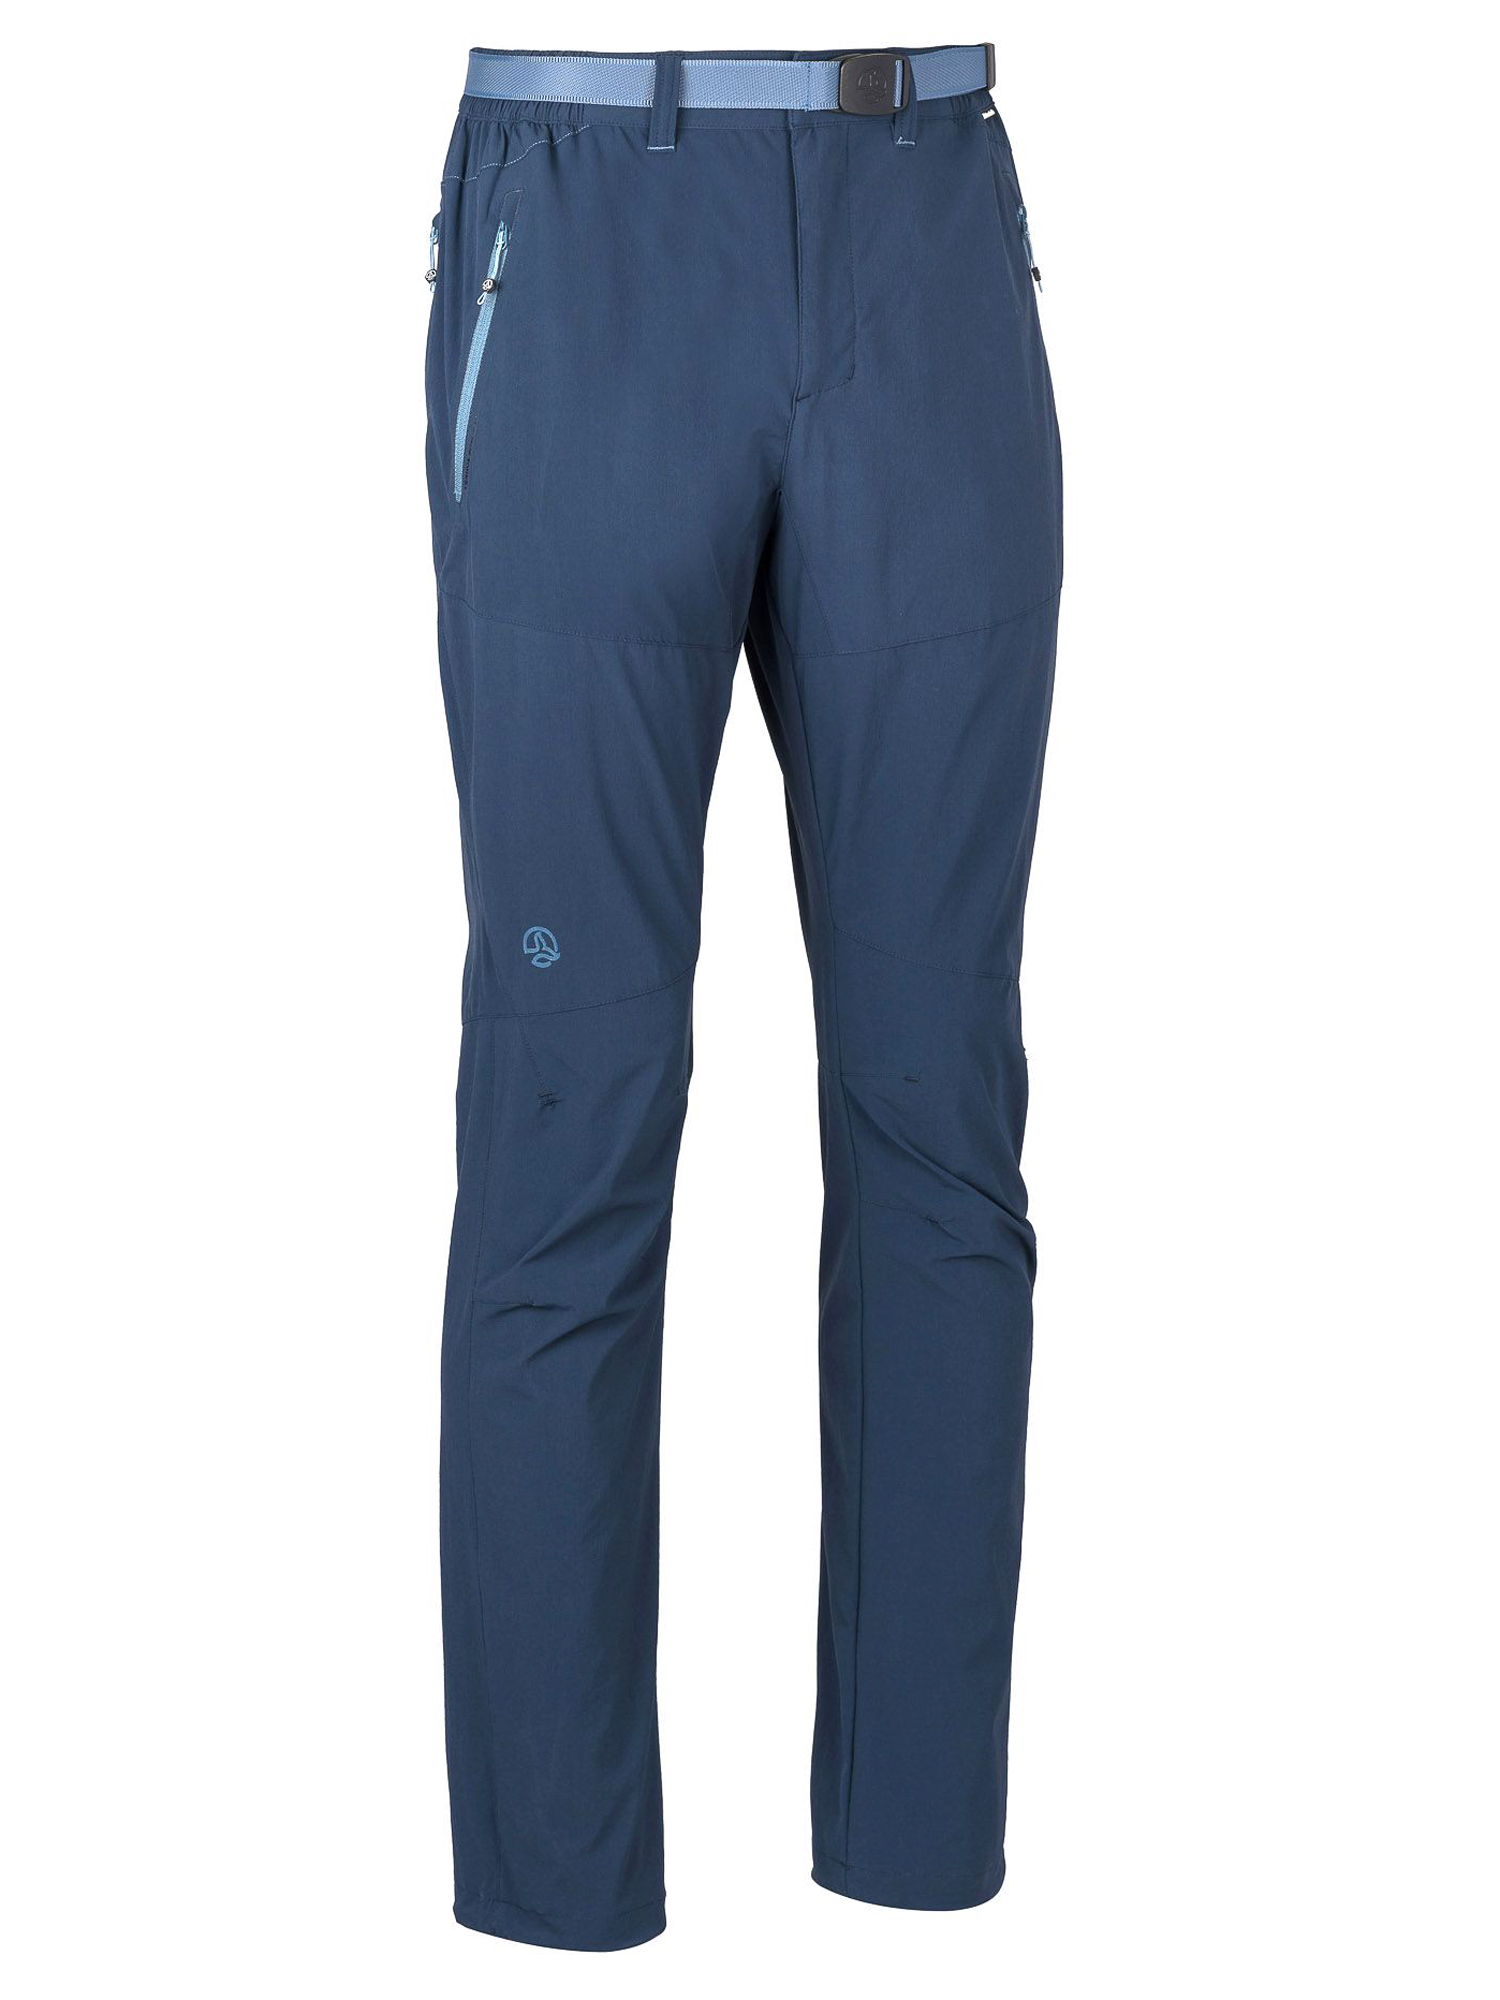 Спортивные брюки мужские Ternua Friz Pt M синие 2XL